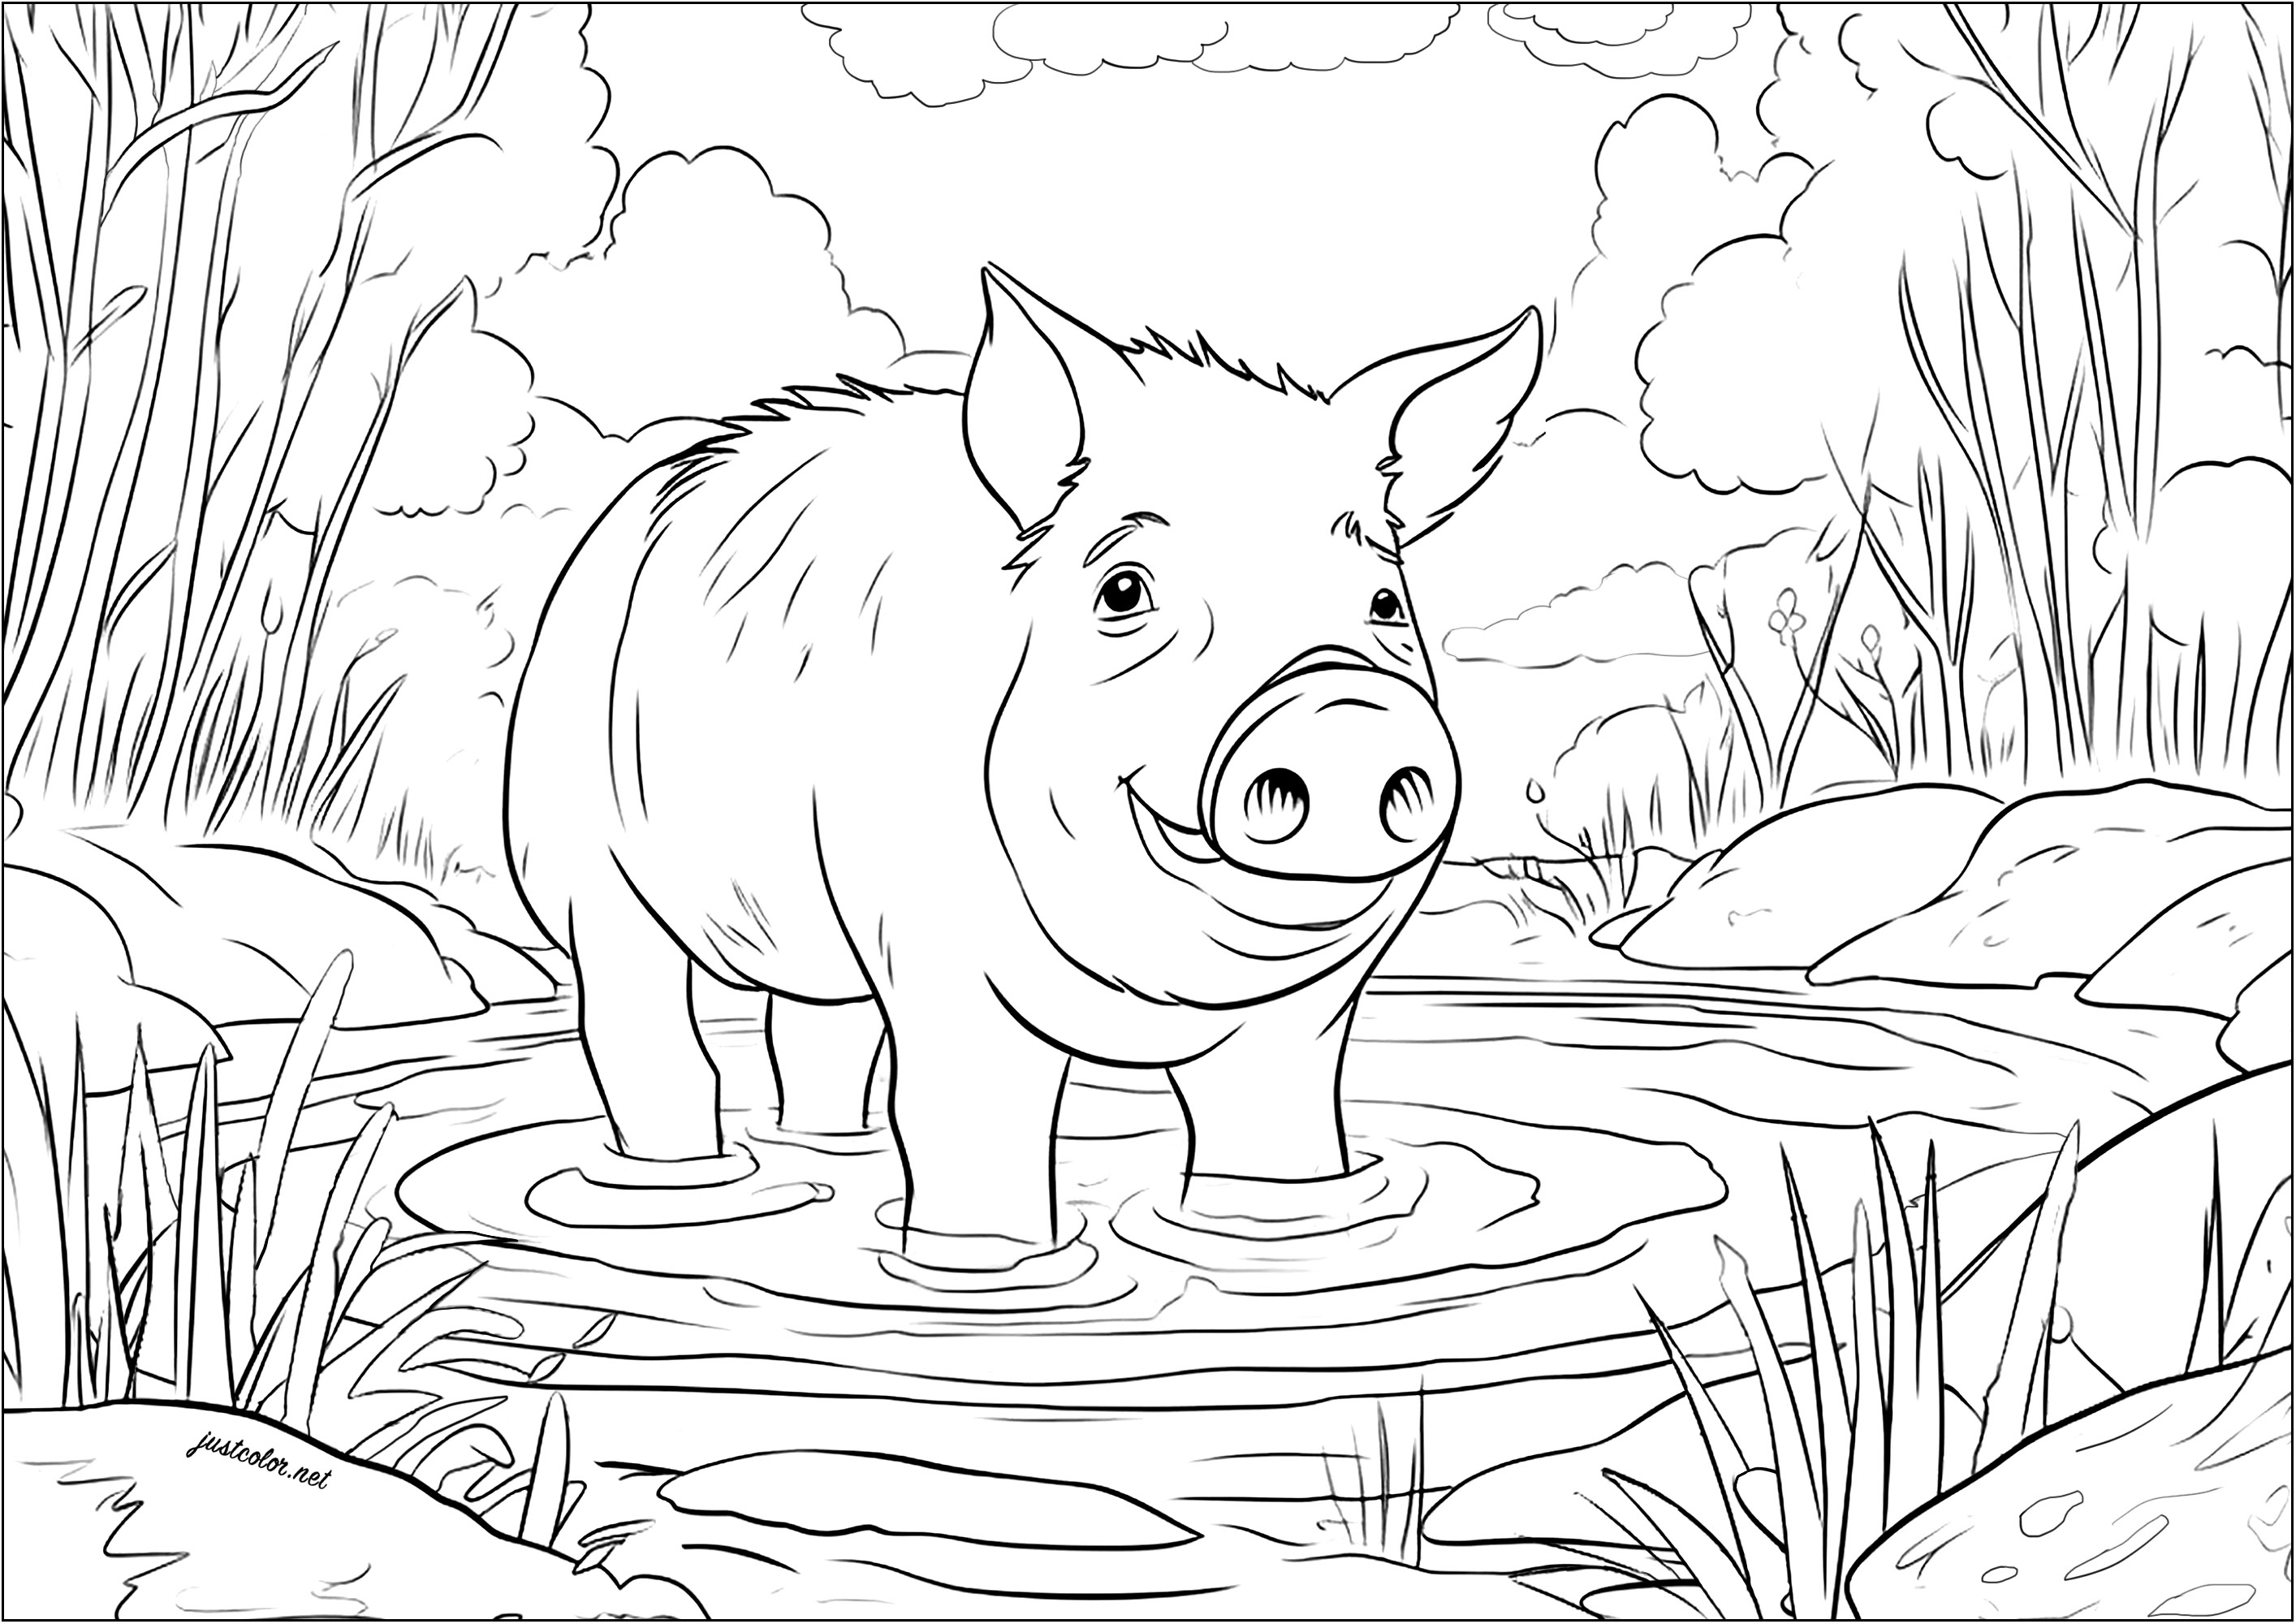 Porco numa piscina de lama. Pinte este lindo porco que parece tão feliz por mergulhar as patas e refrescar-se nesta piscina de lama